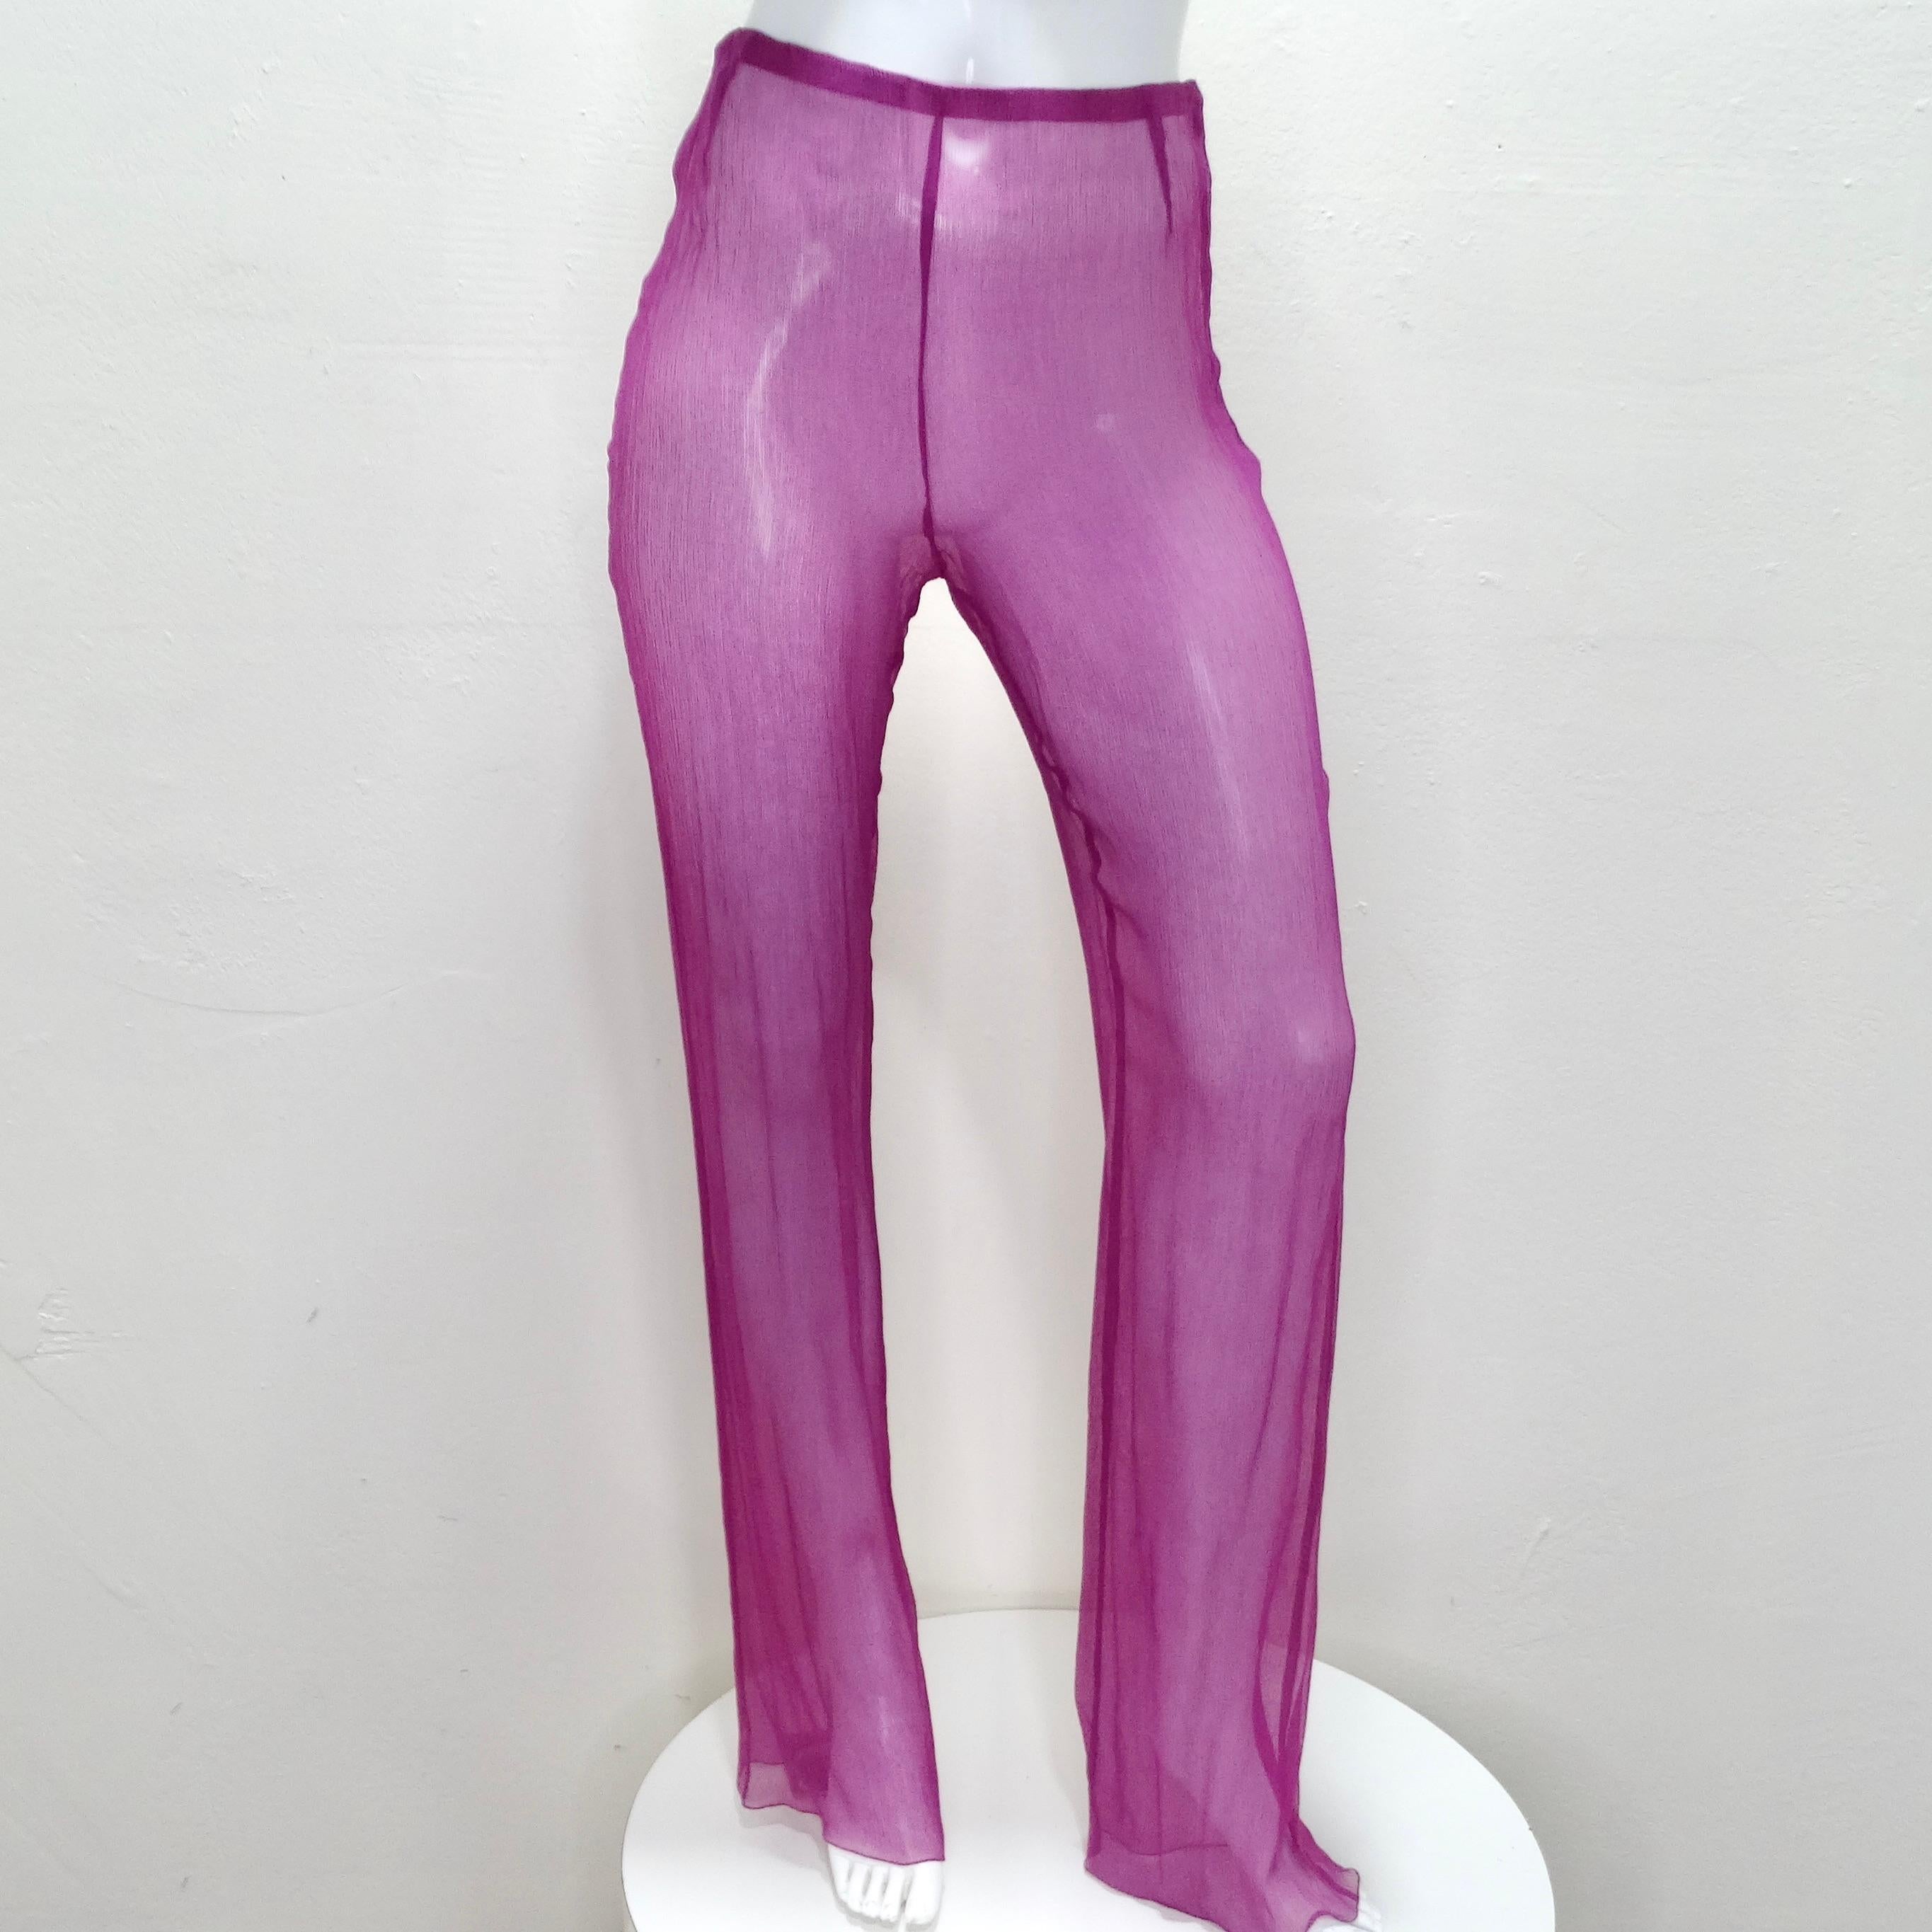 Erweitern Sie Ihre Garderobe mit der zeitlosen Eleganz des Chanel 2000 Purple Silk Dress, Pant & Belt Set, einem Vintage-Ensemble, das Raffinesse und Vielseitigkeit ausstrahlt.

Dieses Outfit aus durchsichtigem Seidenchiffon besteht aus einer